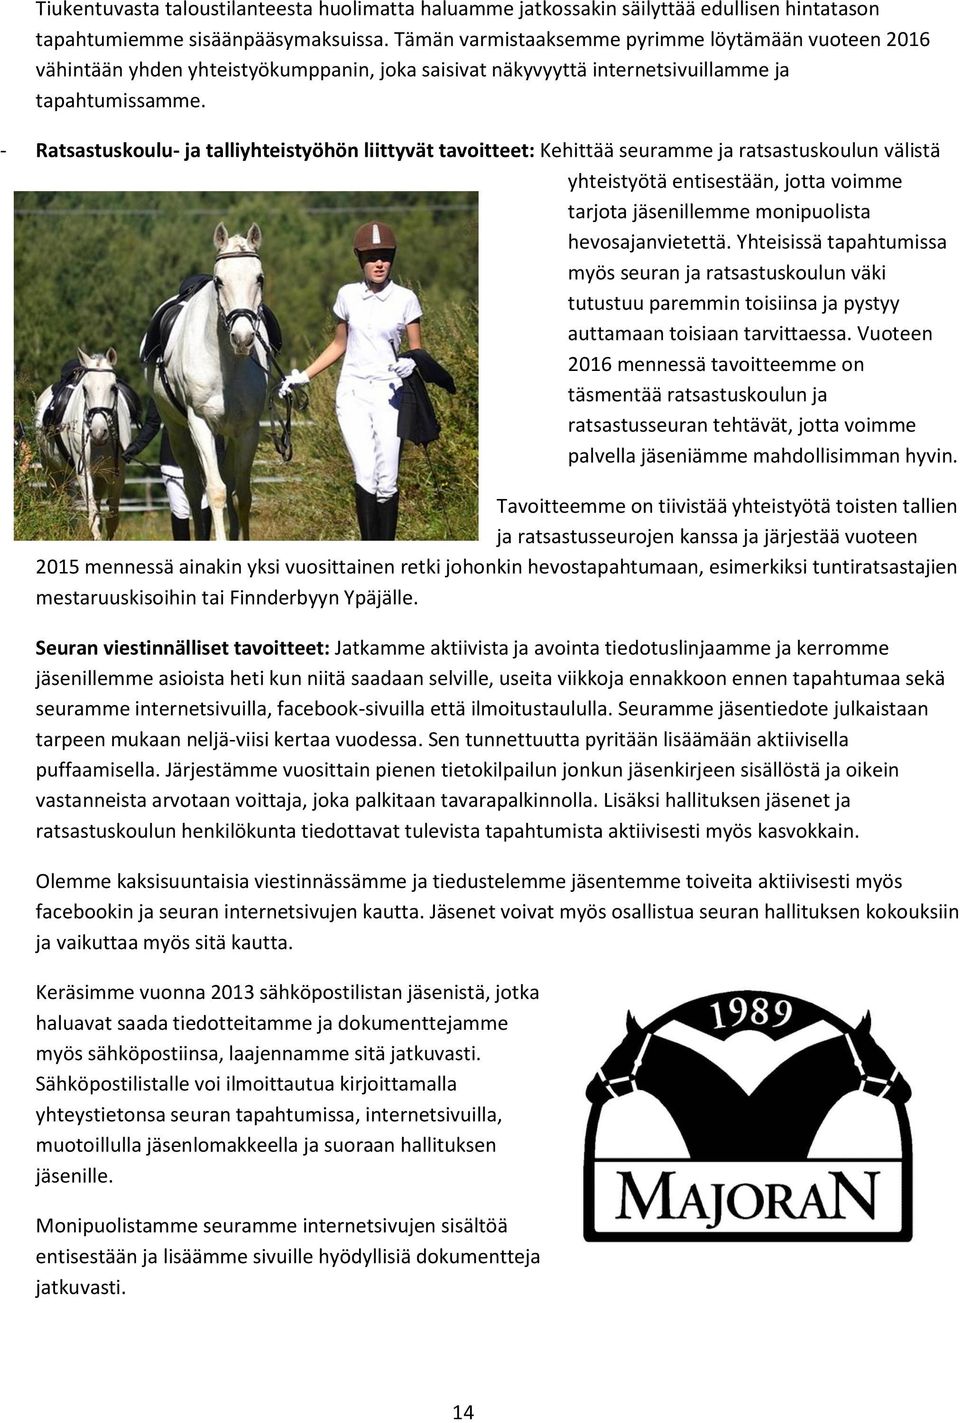 - Ratsastuskoulu- ja talliyhteistyöhön liittyvät tavoitteet: Kehittää seuramme ja ratsastuskoulun välistä yhteistyötä entisestään, jotta voimme tarjota jäsenillemme monipuolista hevosajanvietettä.